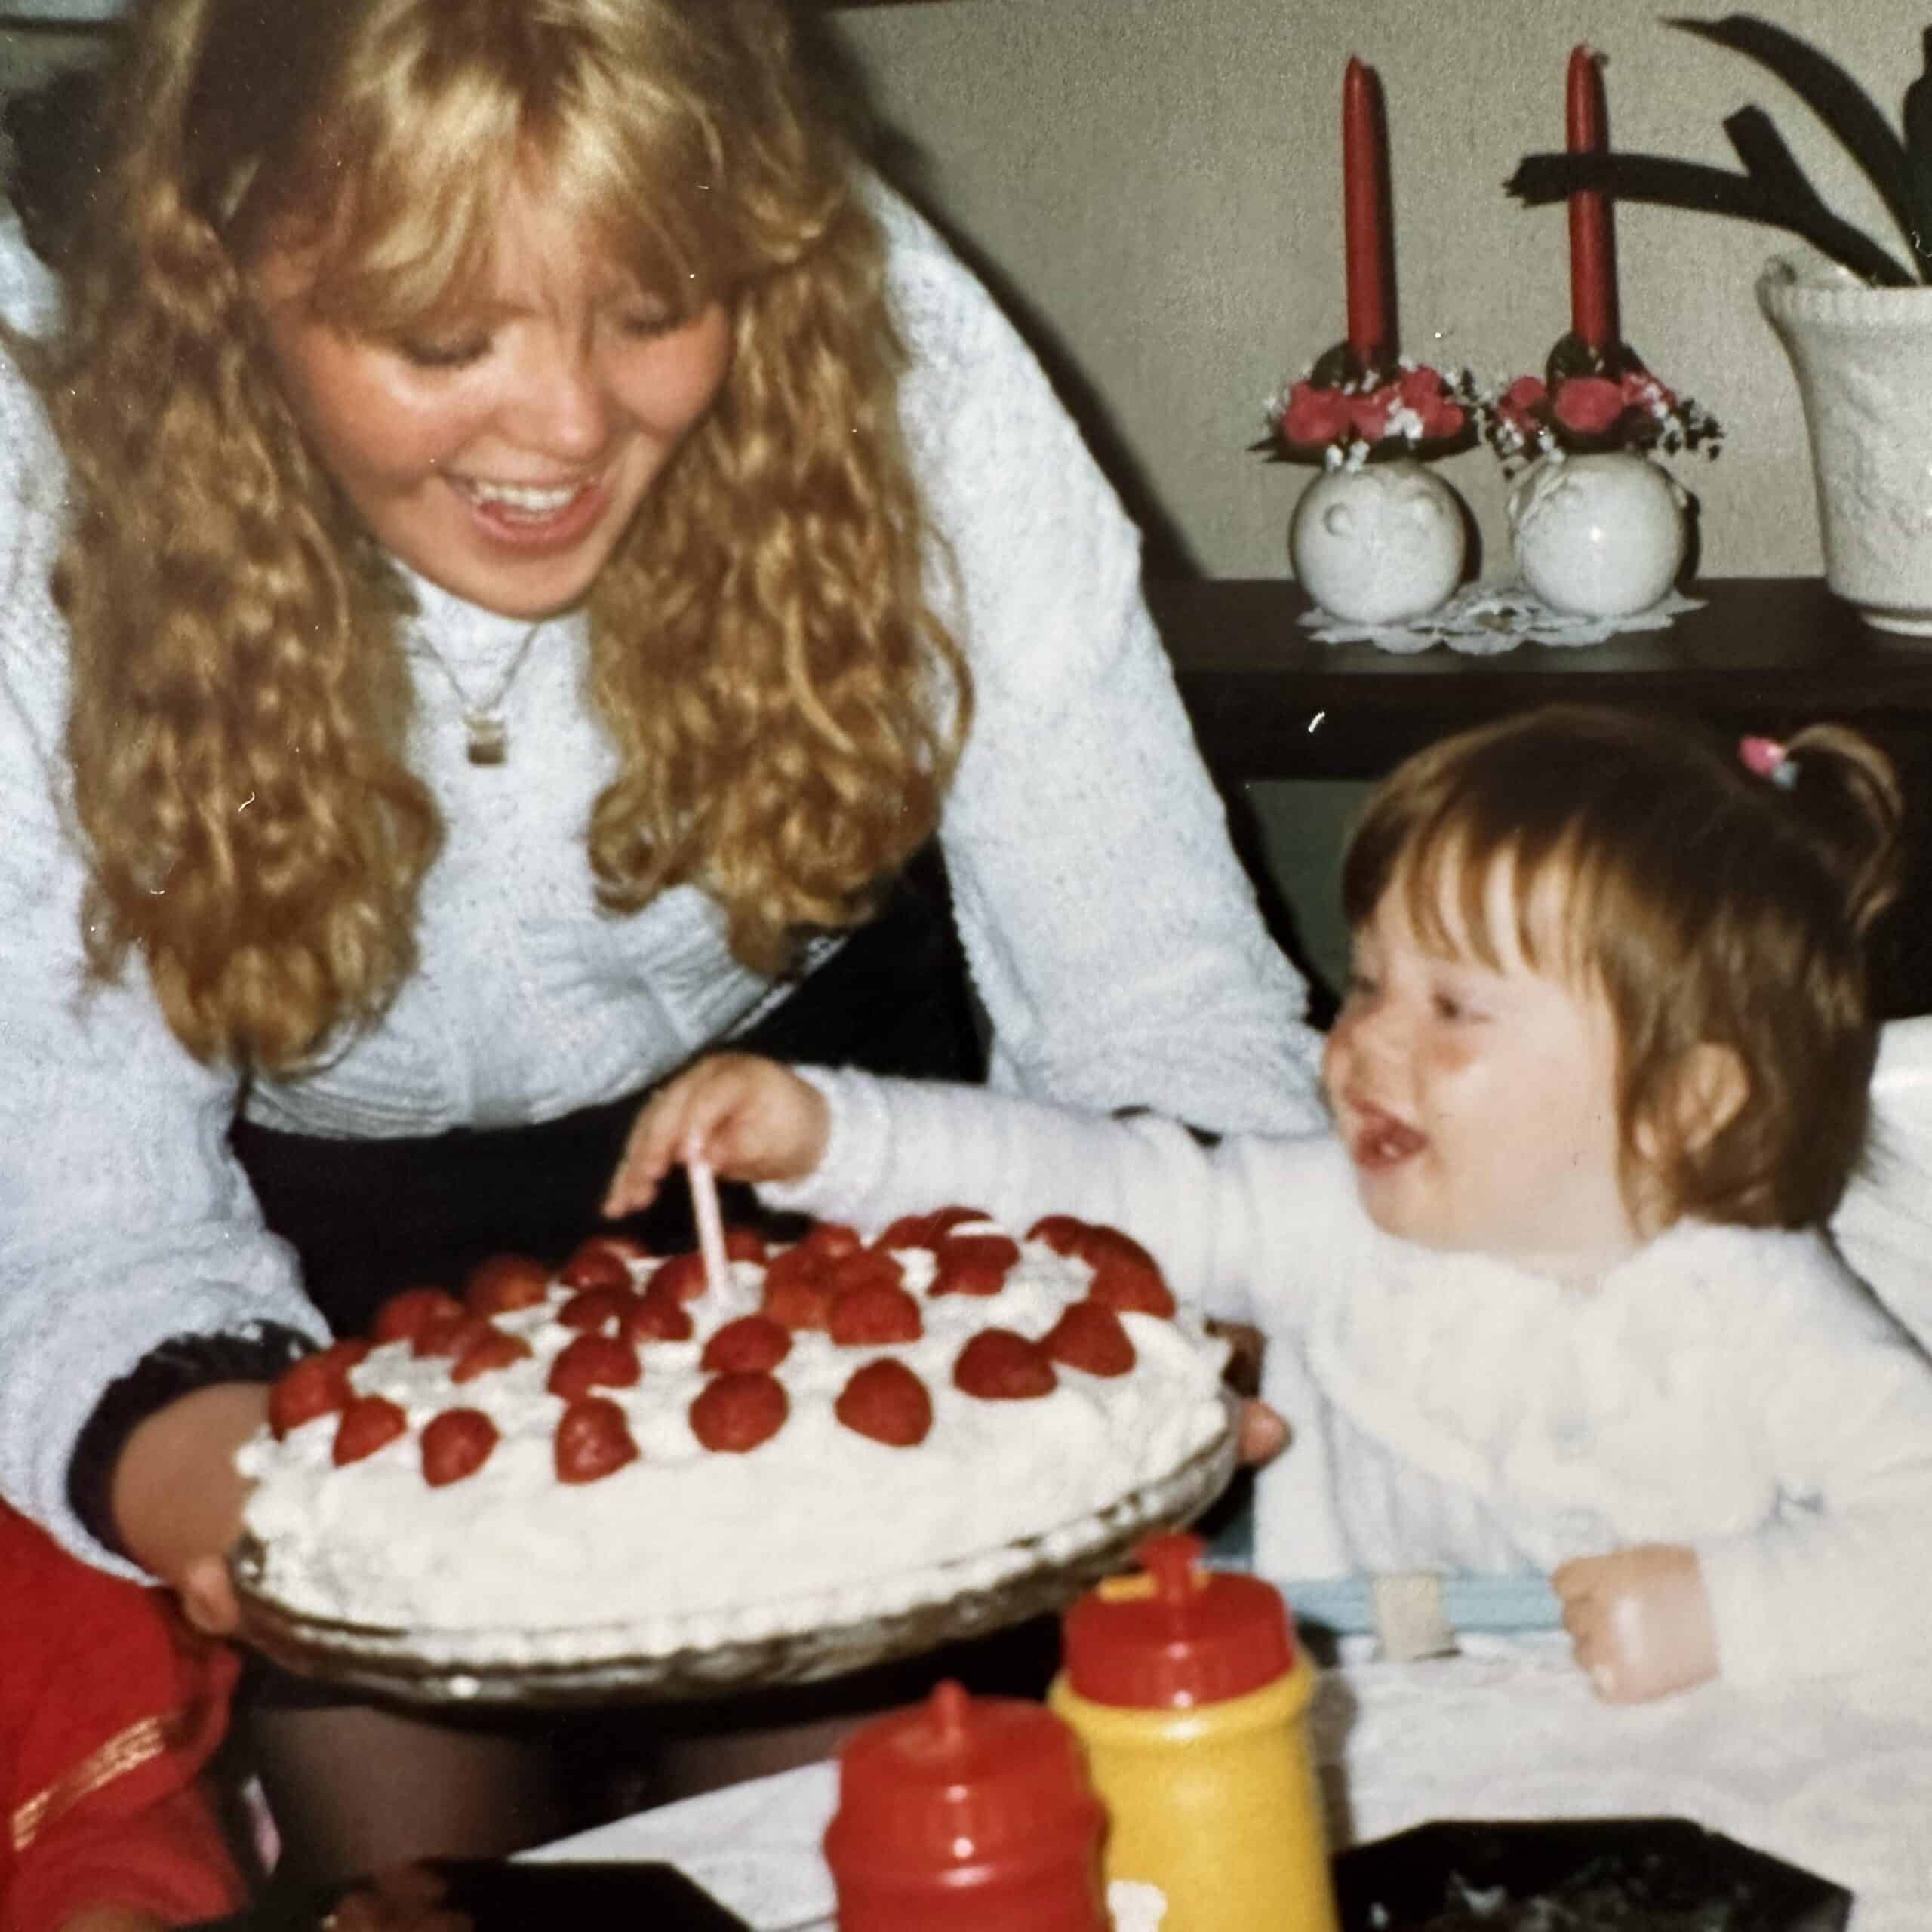 En kvinne med blondt hår blåser ut et stearinlys på en kake.